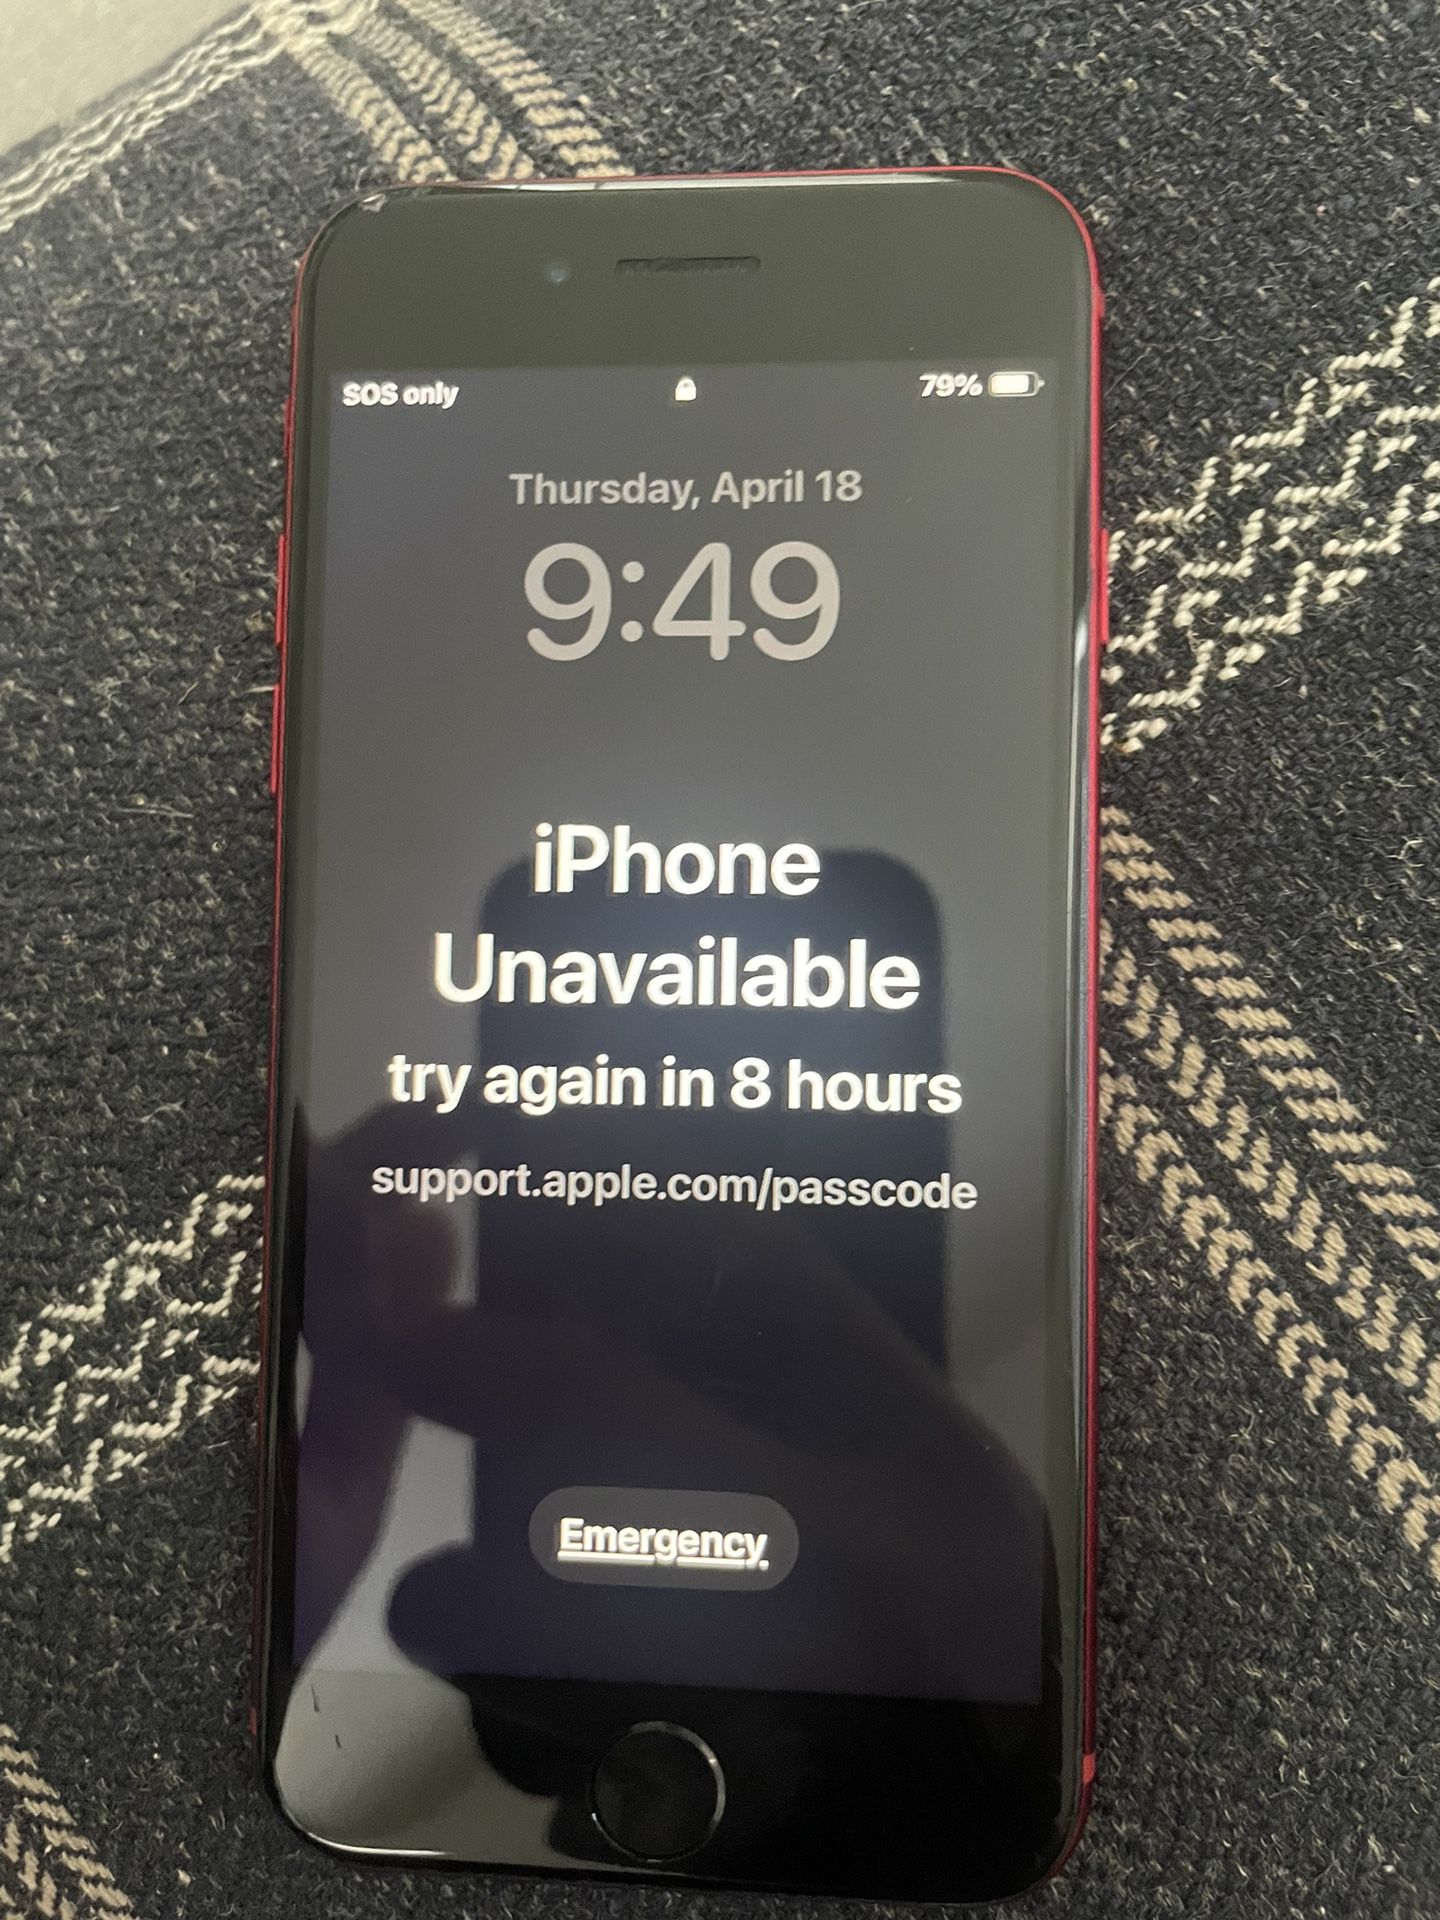 Vendo iPhone XR En Perfectas condiciones Único Detalle Se Me Olvidó La Contraseña Y Esta Bloqueado Solo Para Respuestos 